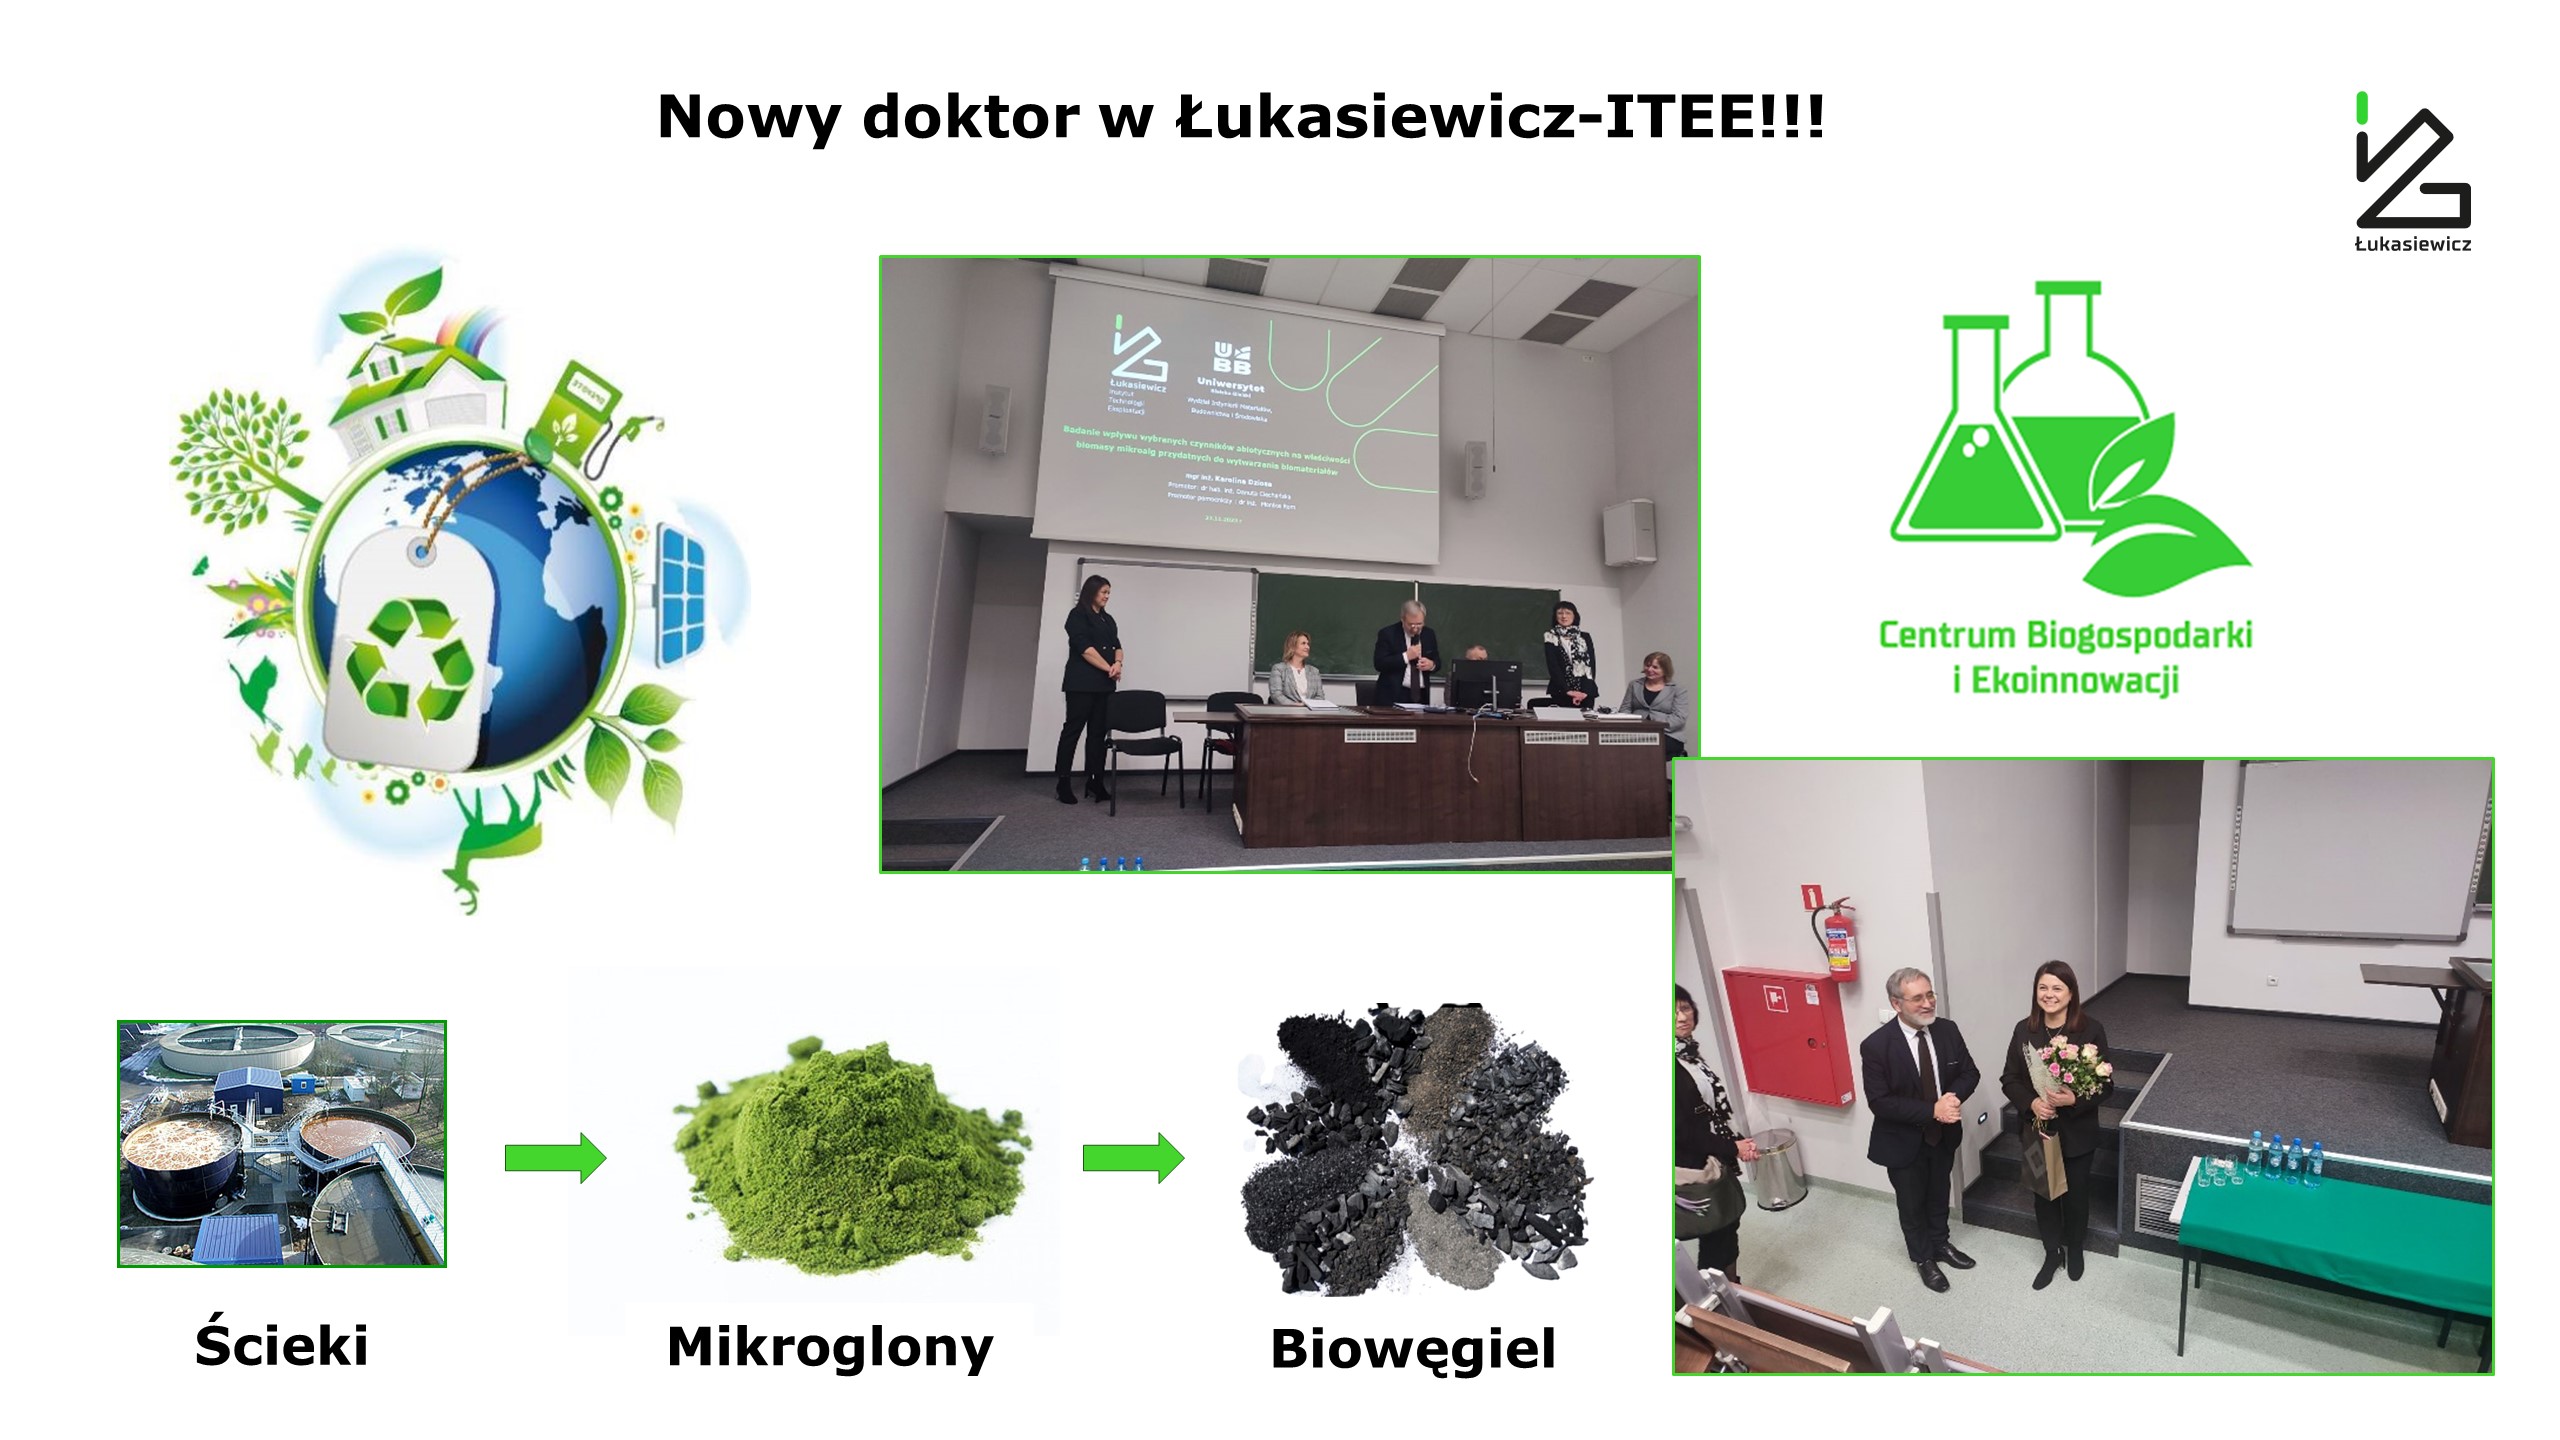 Nowy doktor w Łukasiewicz-ITEE